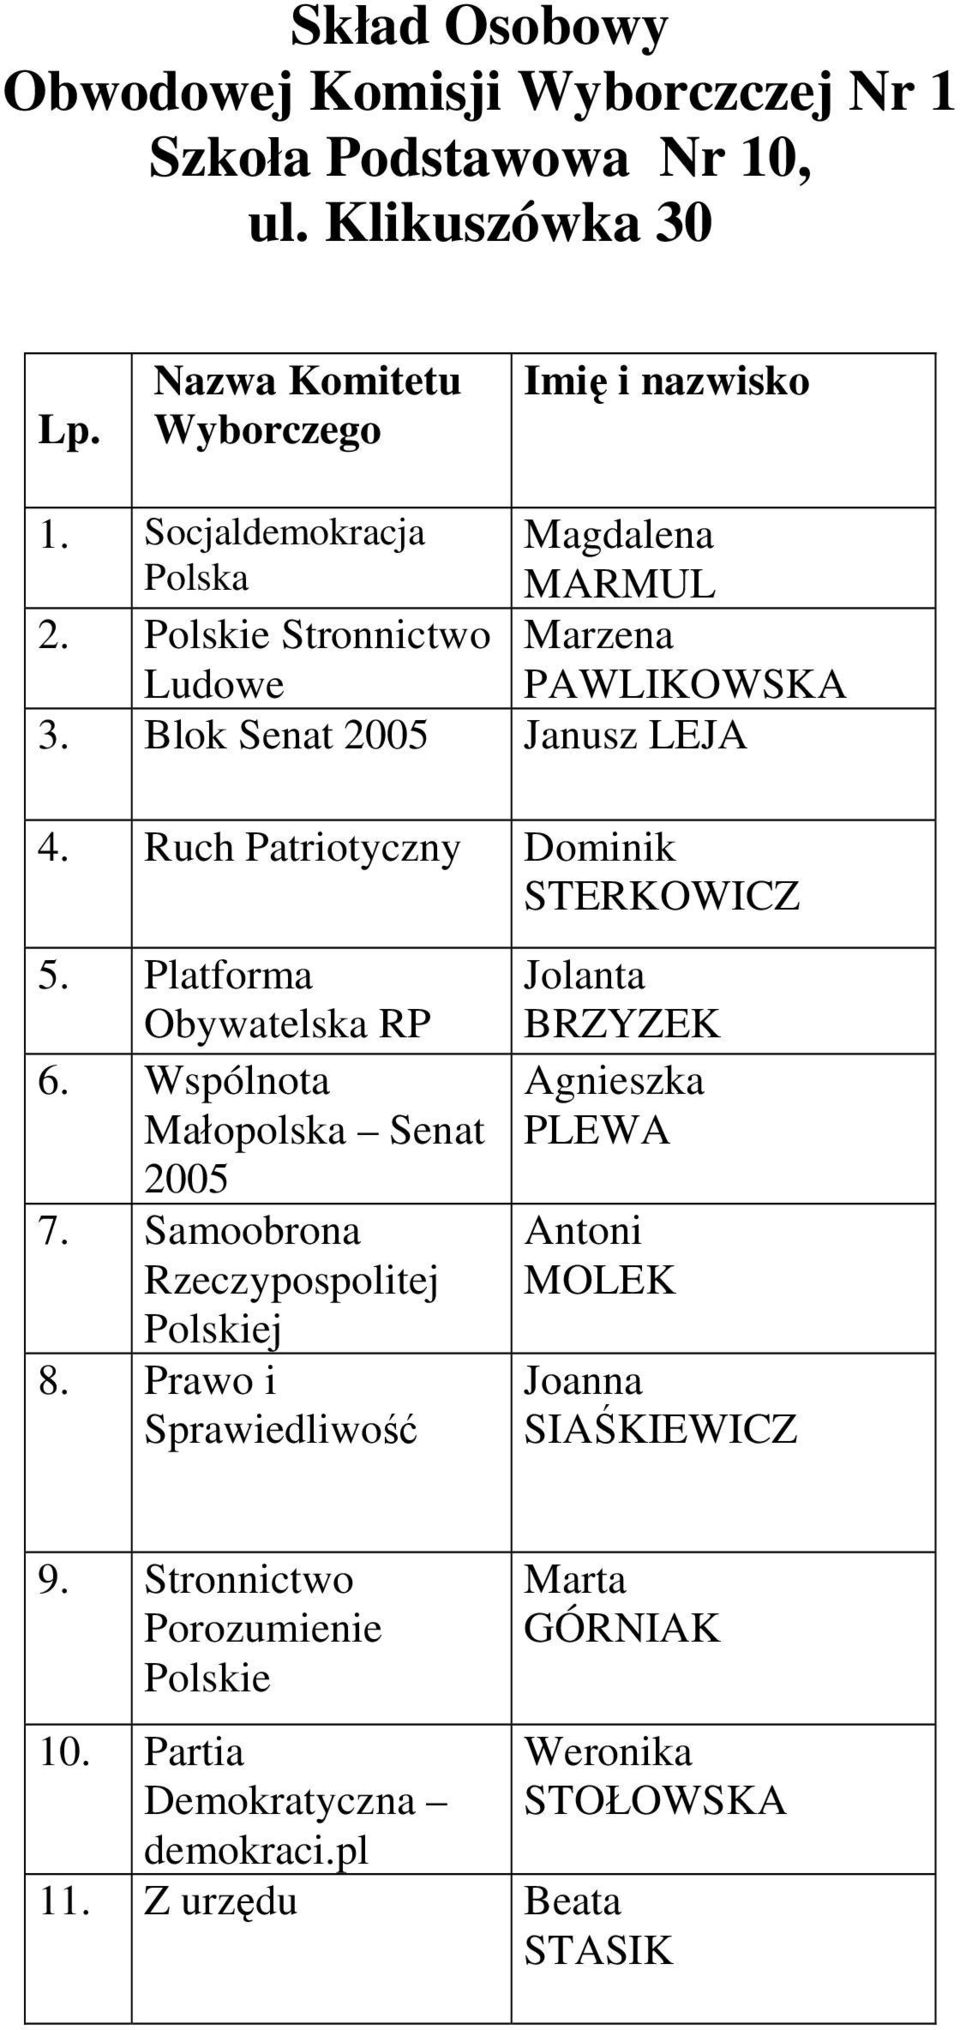 Ruch Patriotyczny Dominik STERKOWICZ 5. Platforma 6. Wspólnota Małopolska Senat 7.